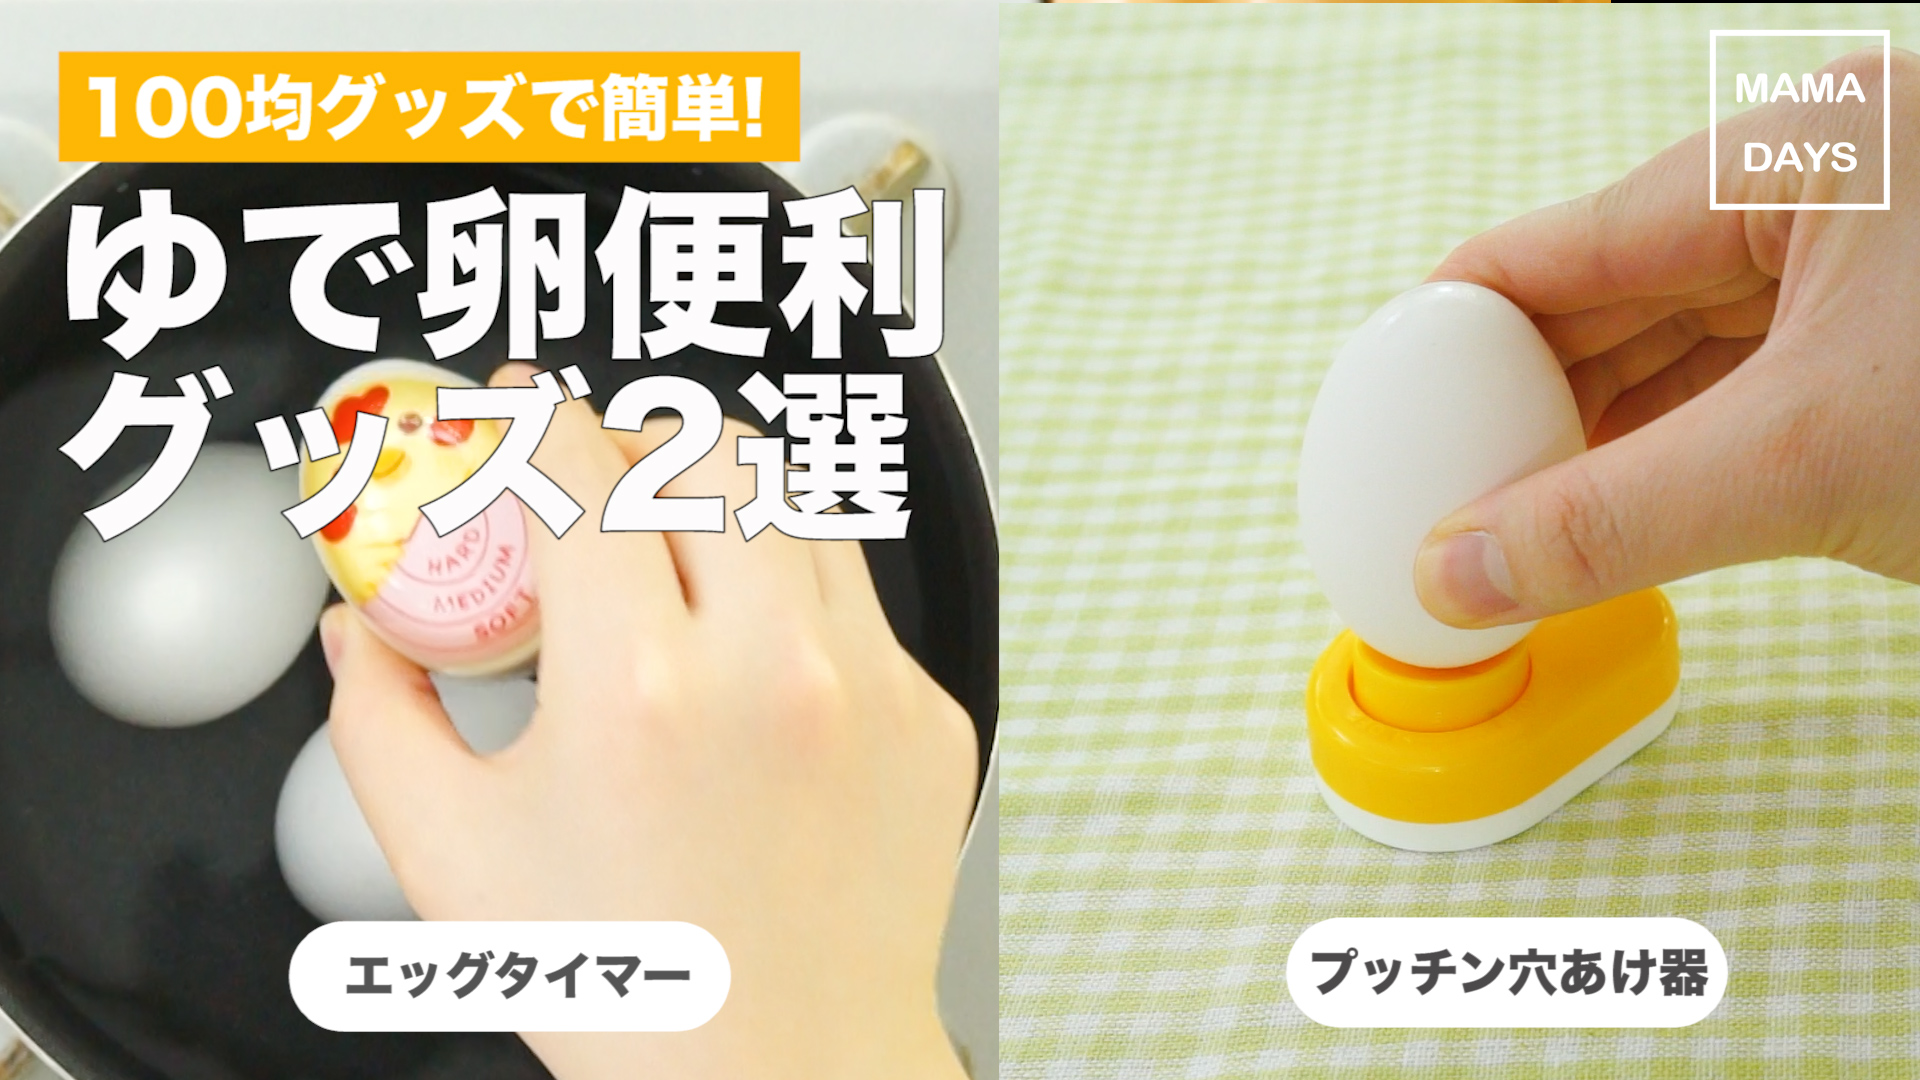 今話題の100均グッズ!ゆで卵便利グッズ2選 - MAMADAYS - ママデイズ - | Yahoo! JAPAN